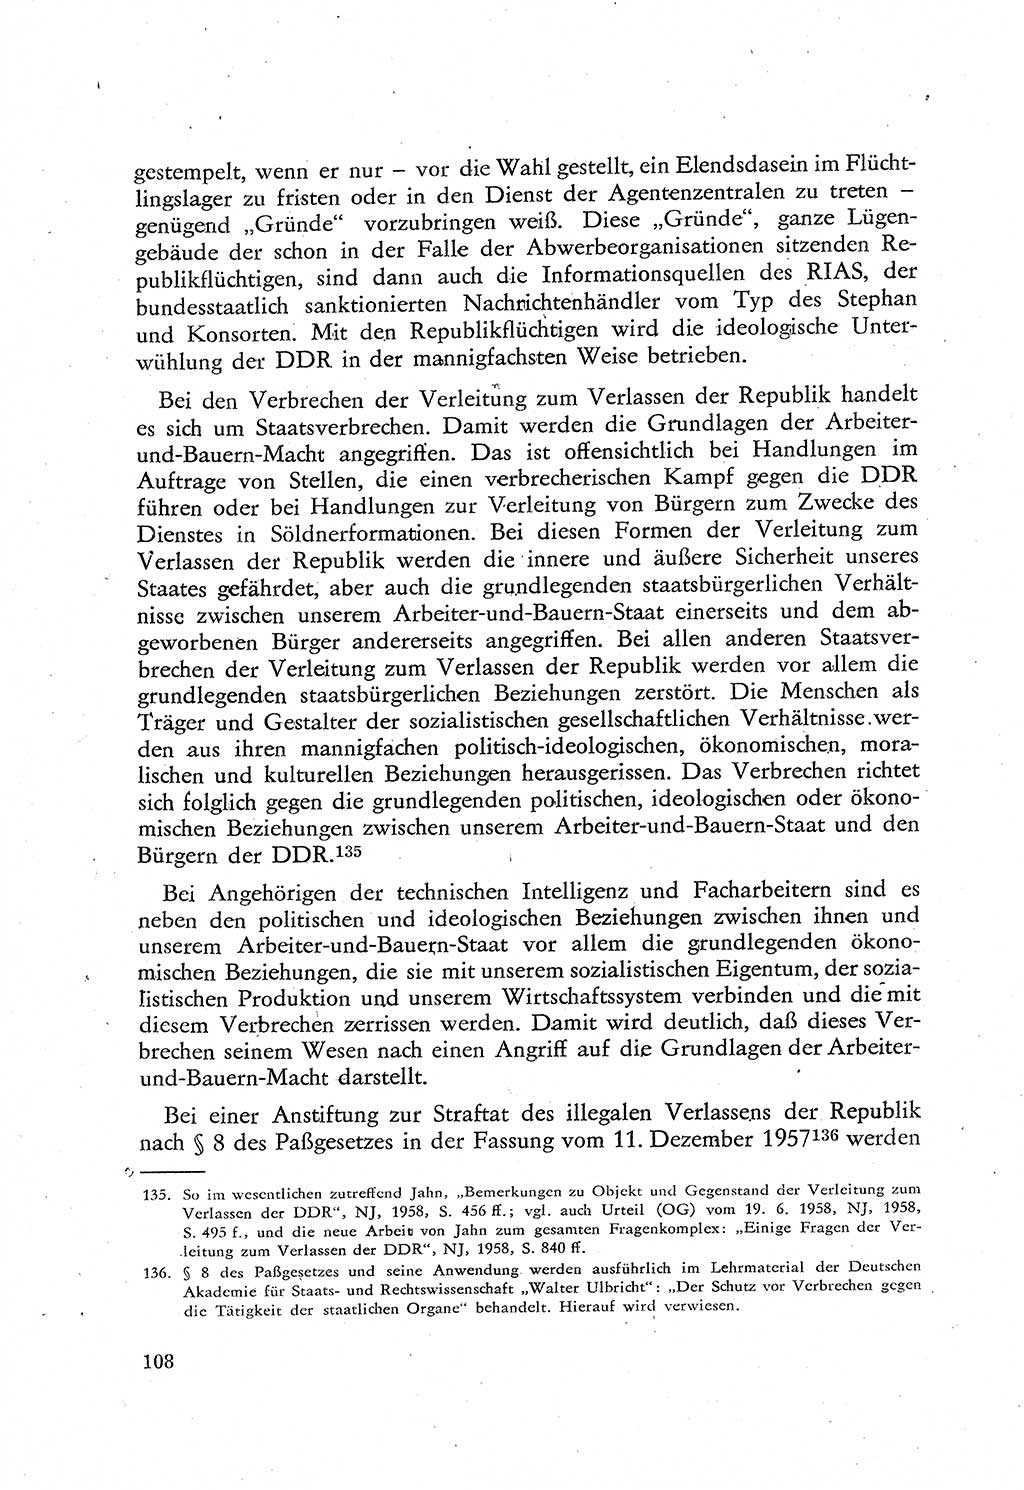 Beiträge zum Strafrecht [Deutsche Demokratische Republik (DDR)], Staatsverbrechen 1959, Seite 108 (Beitr. Strafr. DDR St.-Verbr. 1959, S. 108)